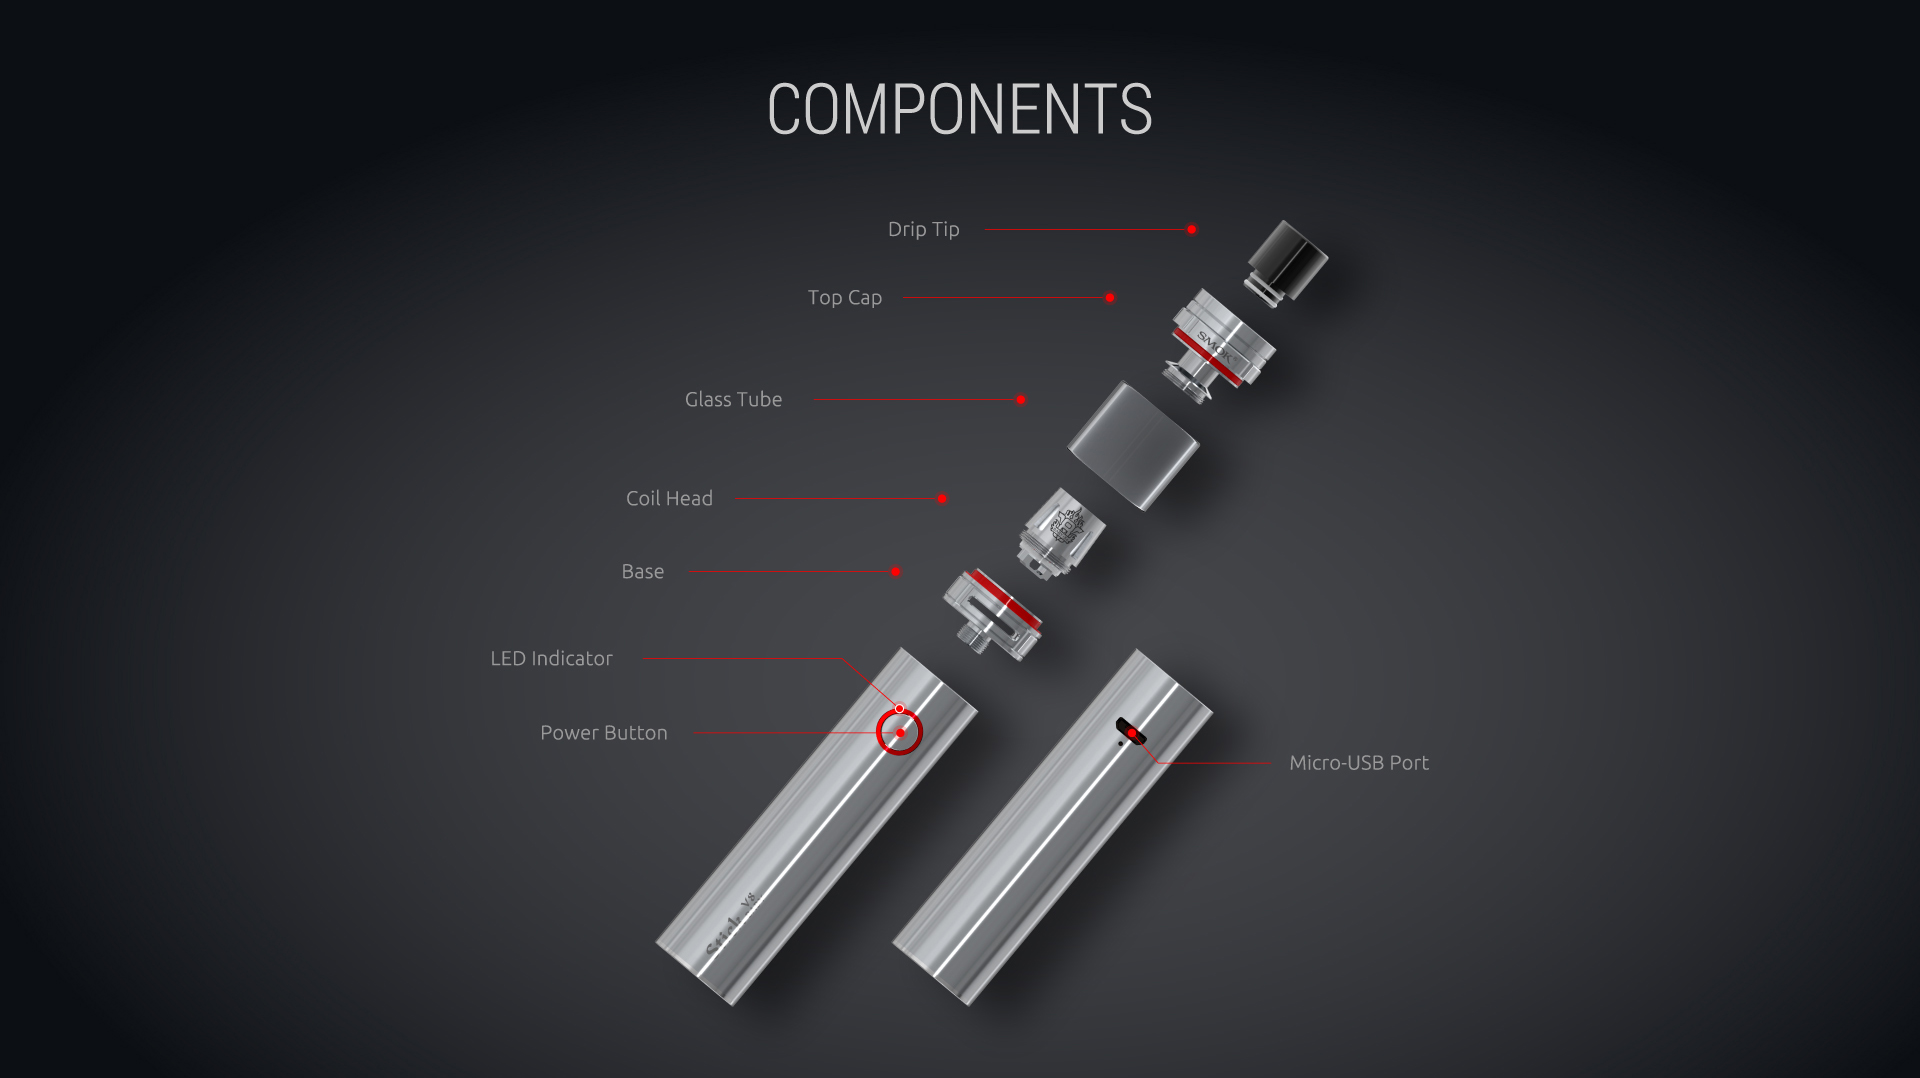 Components of SMOK Stick V8 Baby Mod&Kit 